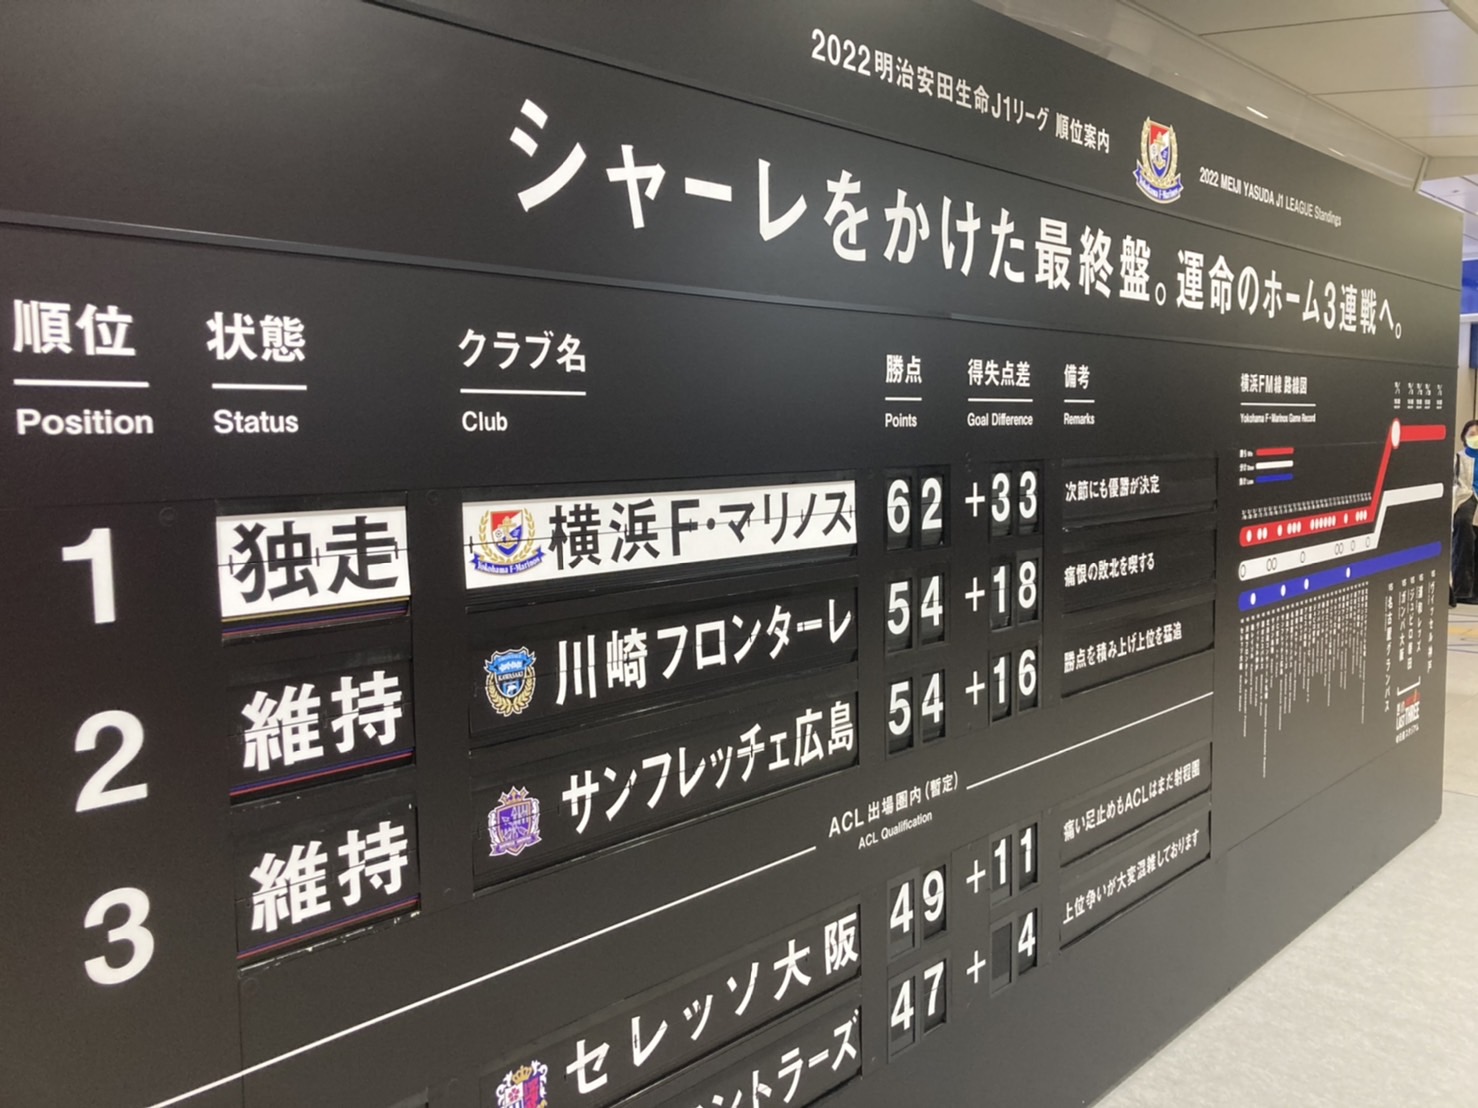 新横浜駅に懐かしの“パタパタ”が登場。横浜FMの終盤戦に向けた一口コメントも必見